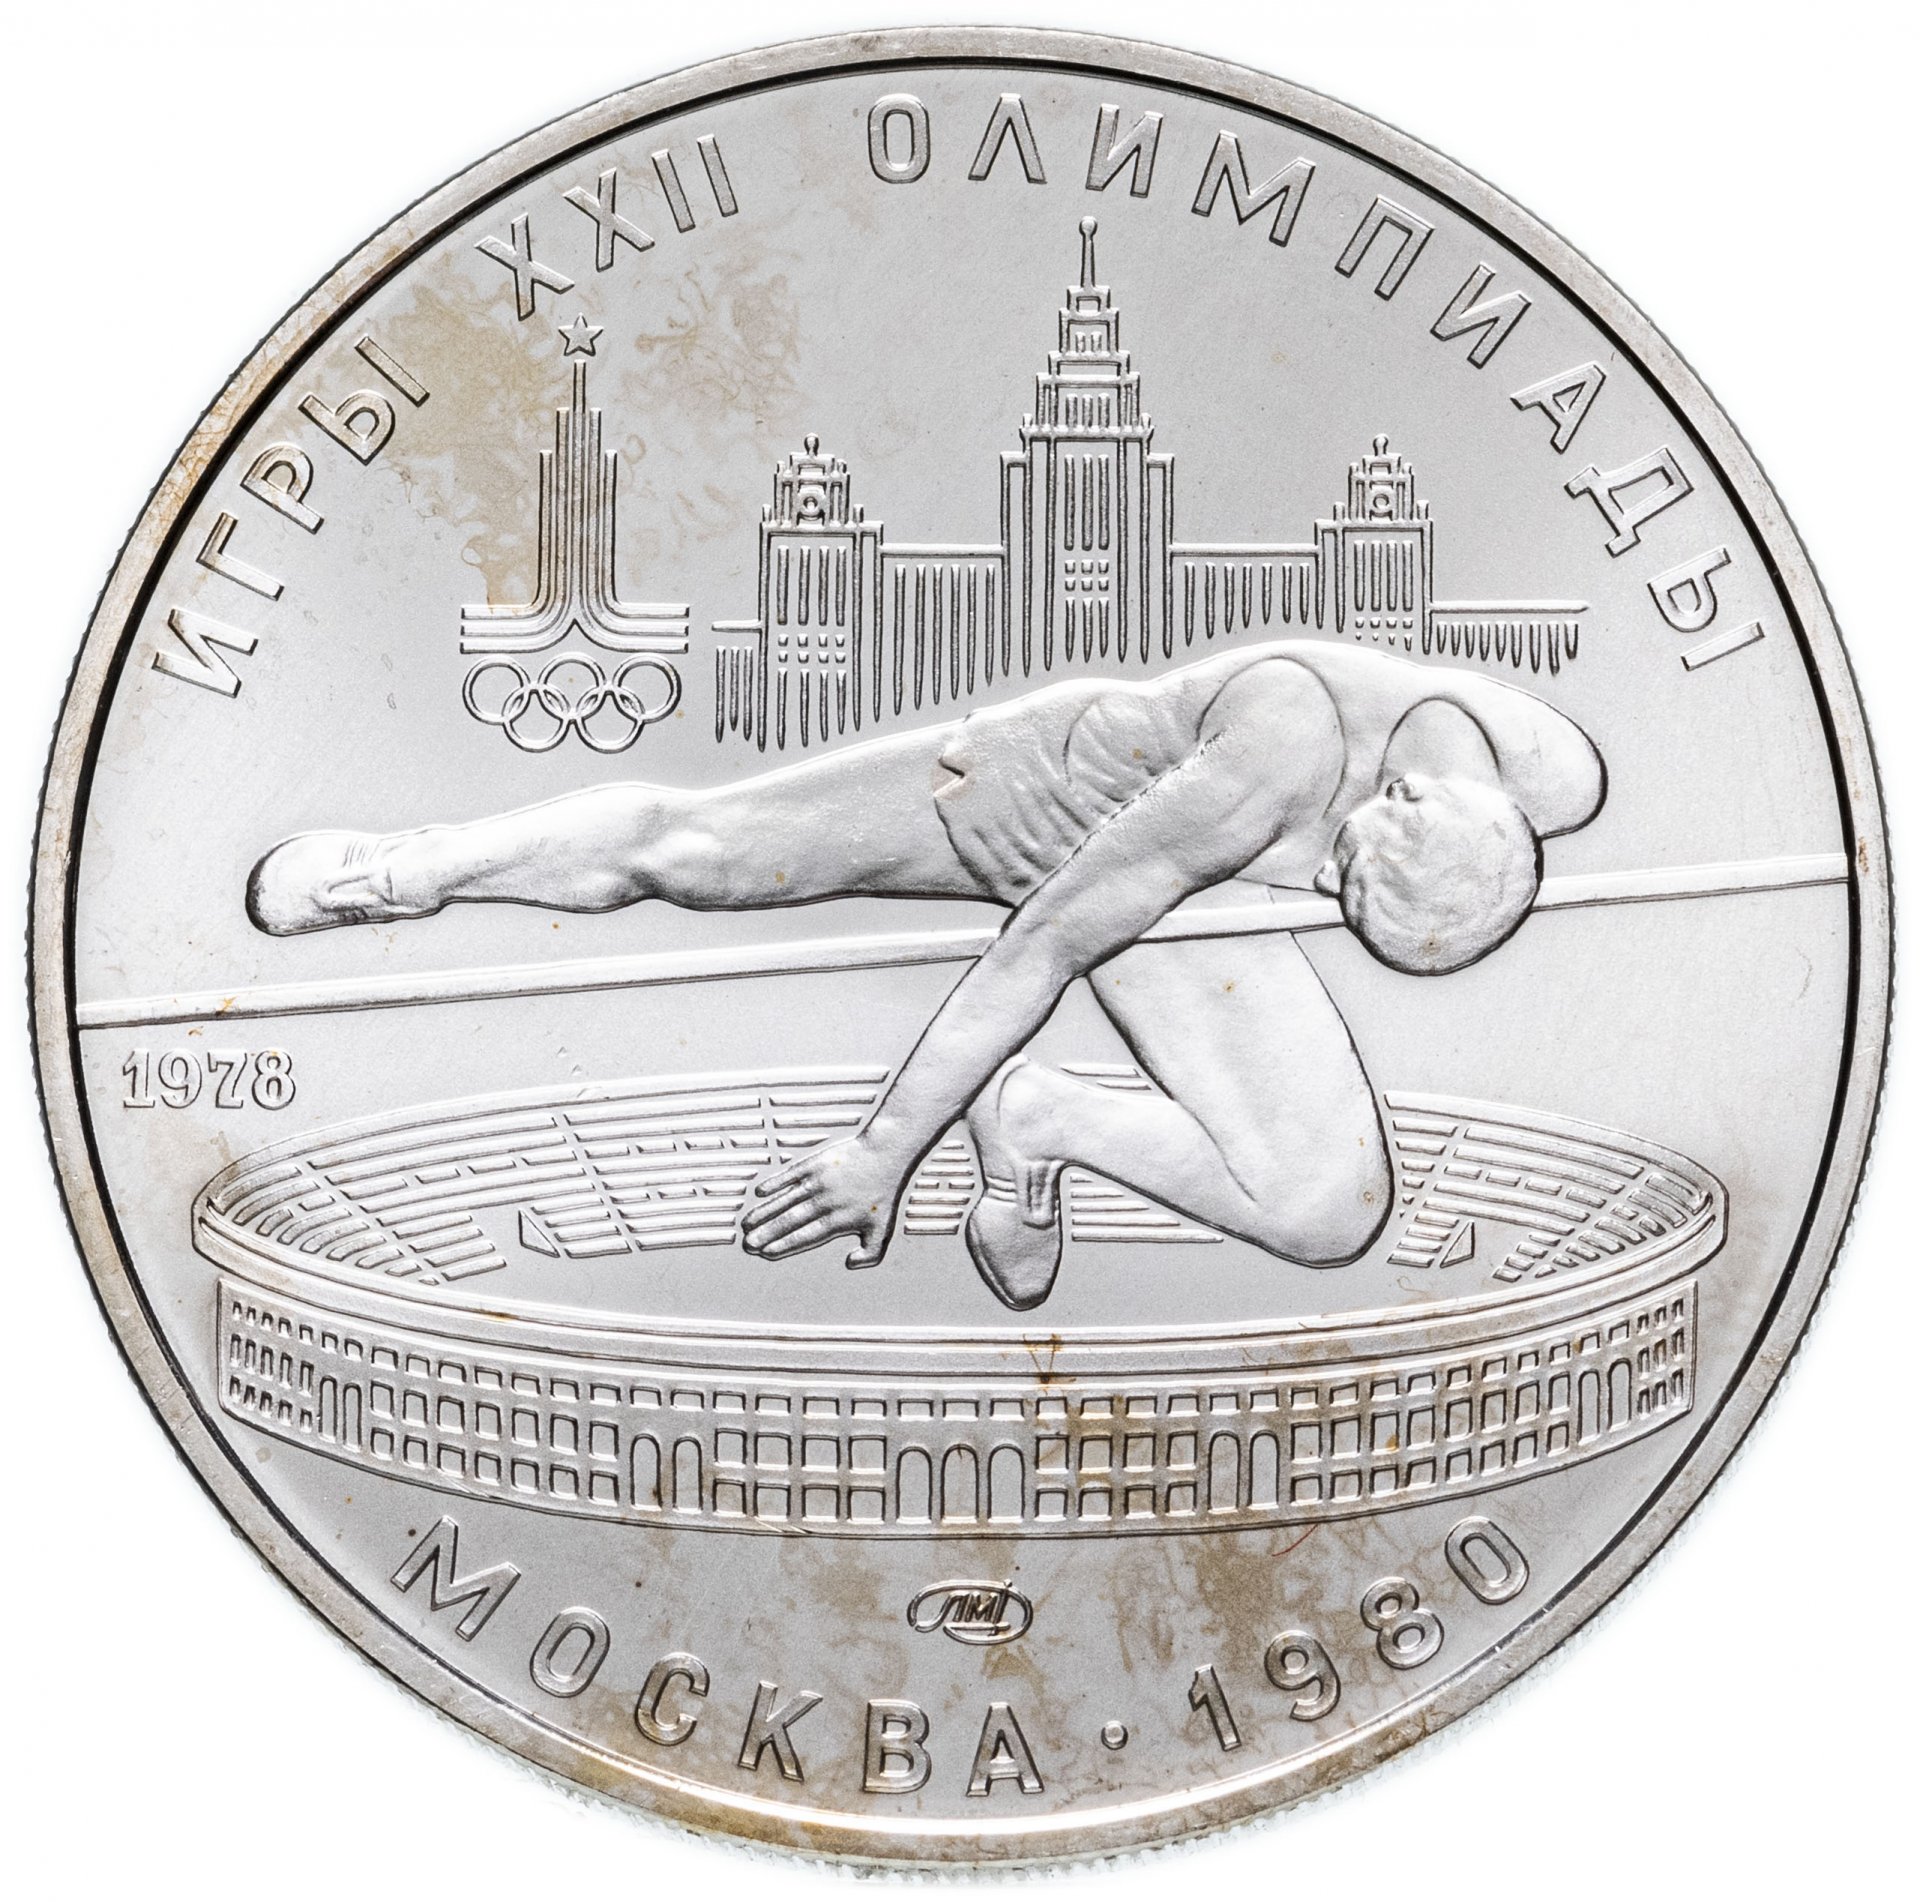 5 рублей серебряные. Монета игры XXII олимпиады Москва. Монеты олимпиады 1980.